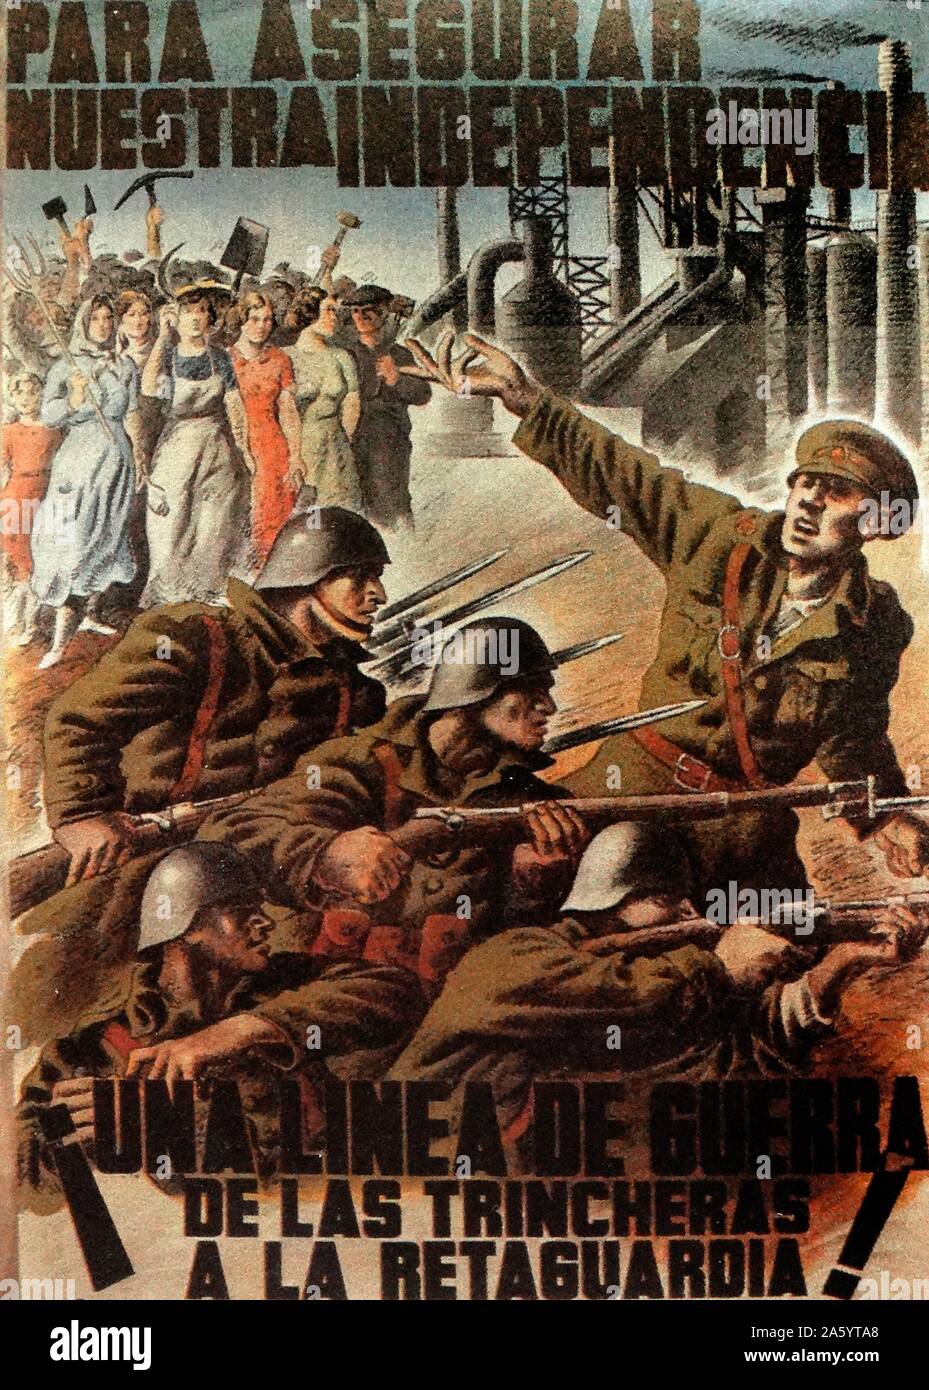 Assurer para nuestra Independencia (afin d'assurer notre indépendance) affiche de propagande républicaine de la guerre civile espagnole Banque D'Images